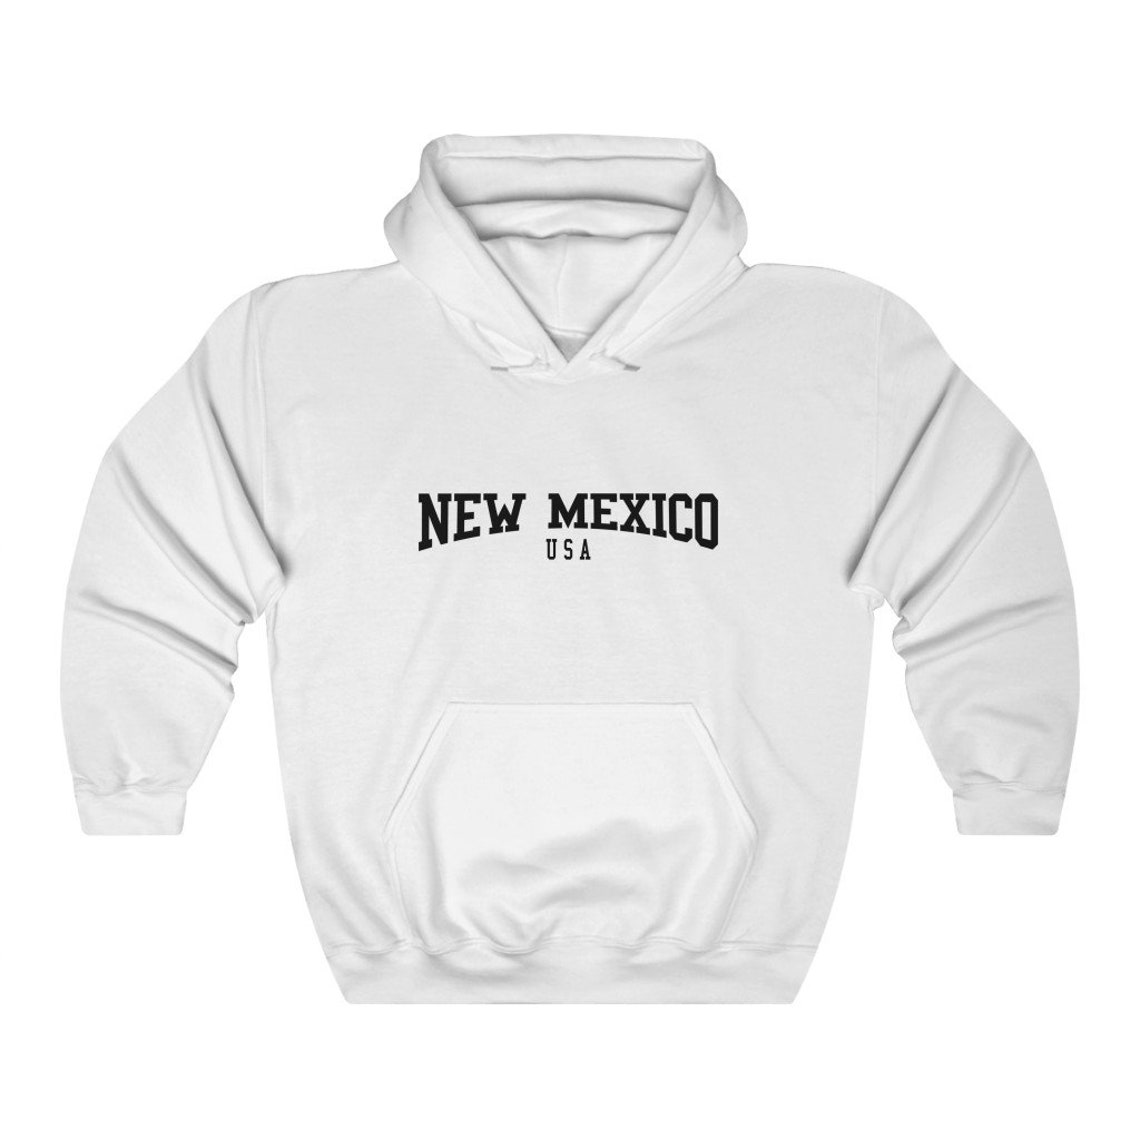 New Mexico USA Hooded Sweatshirt Retro New Mexico Hoodie | Etsy